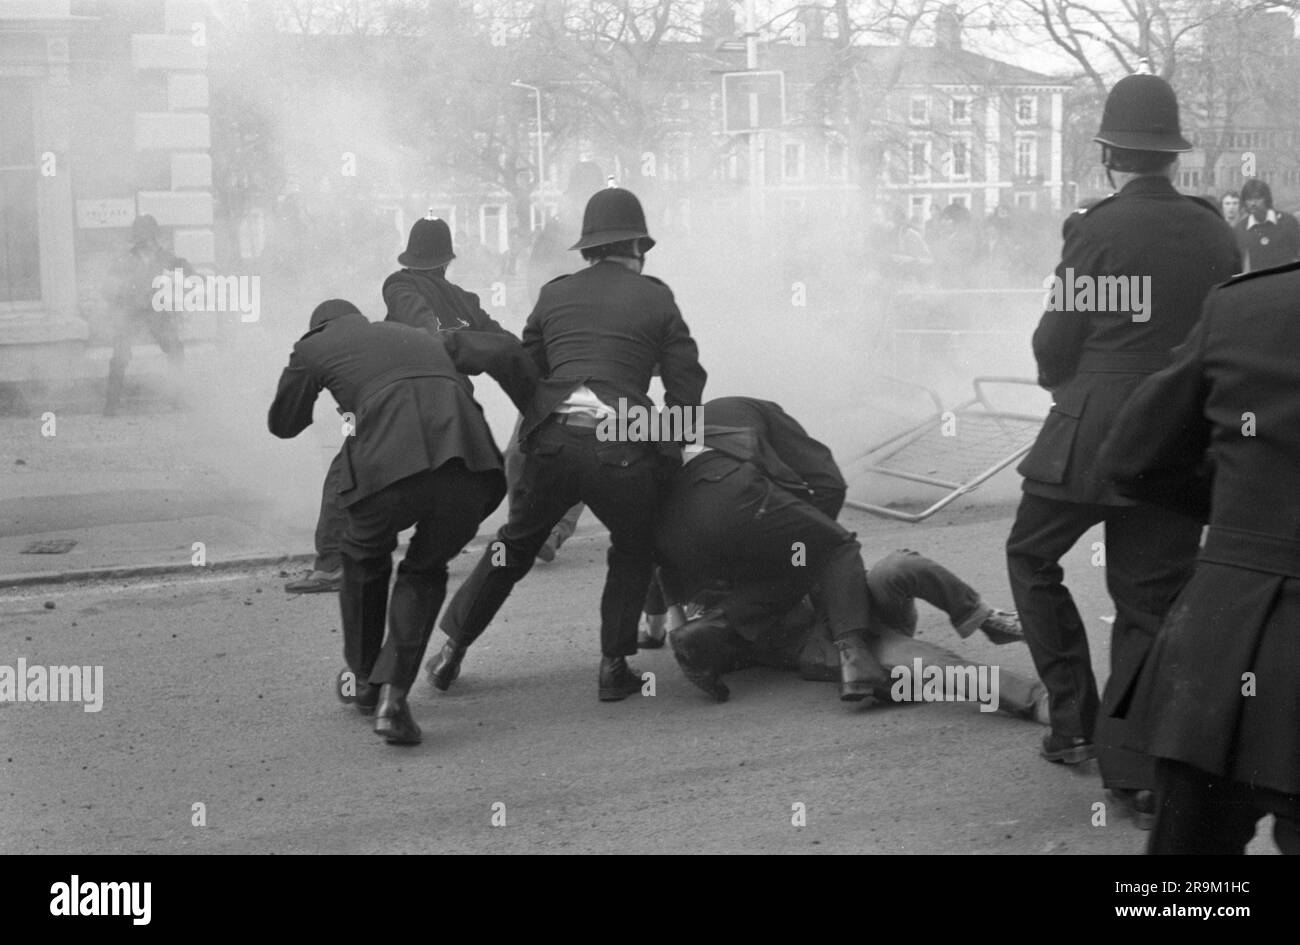 Rassismus 1970er Vereinigtes Königreich. Anti-Nazi-Liga-Demonstration gegen einen marsch der Front National durch das Zentrum von Leicester. Demonstranten der Polizei und der Anti-Nazi-Liga in einem Gefecht. Leicester, England, ca. 1978. HOMER SYKES Stockfoto